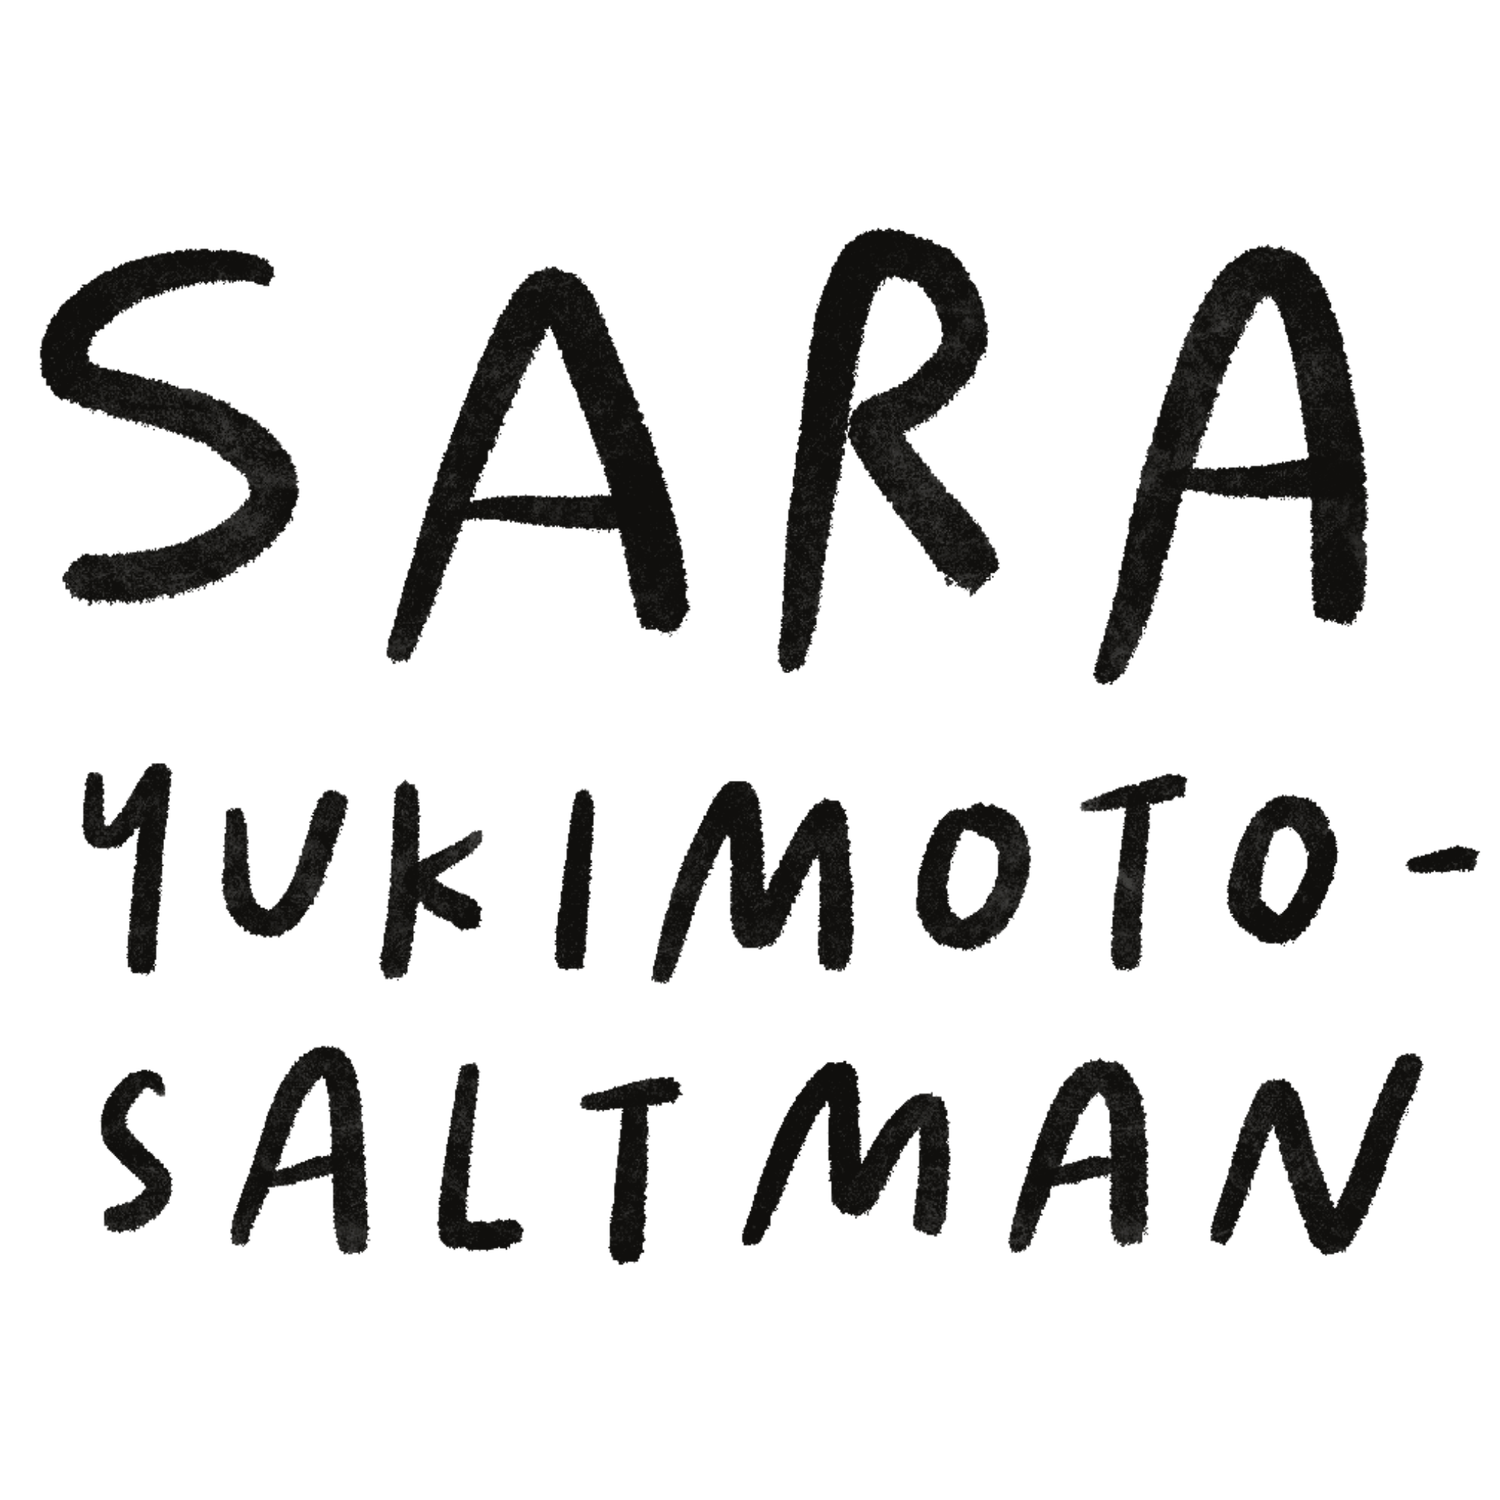 Sara Yukimoto-Saltman